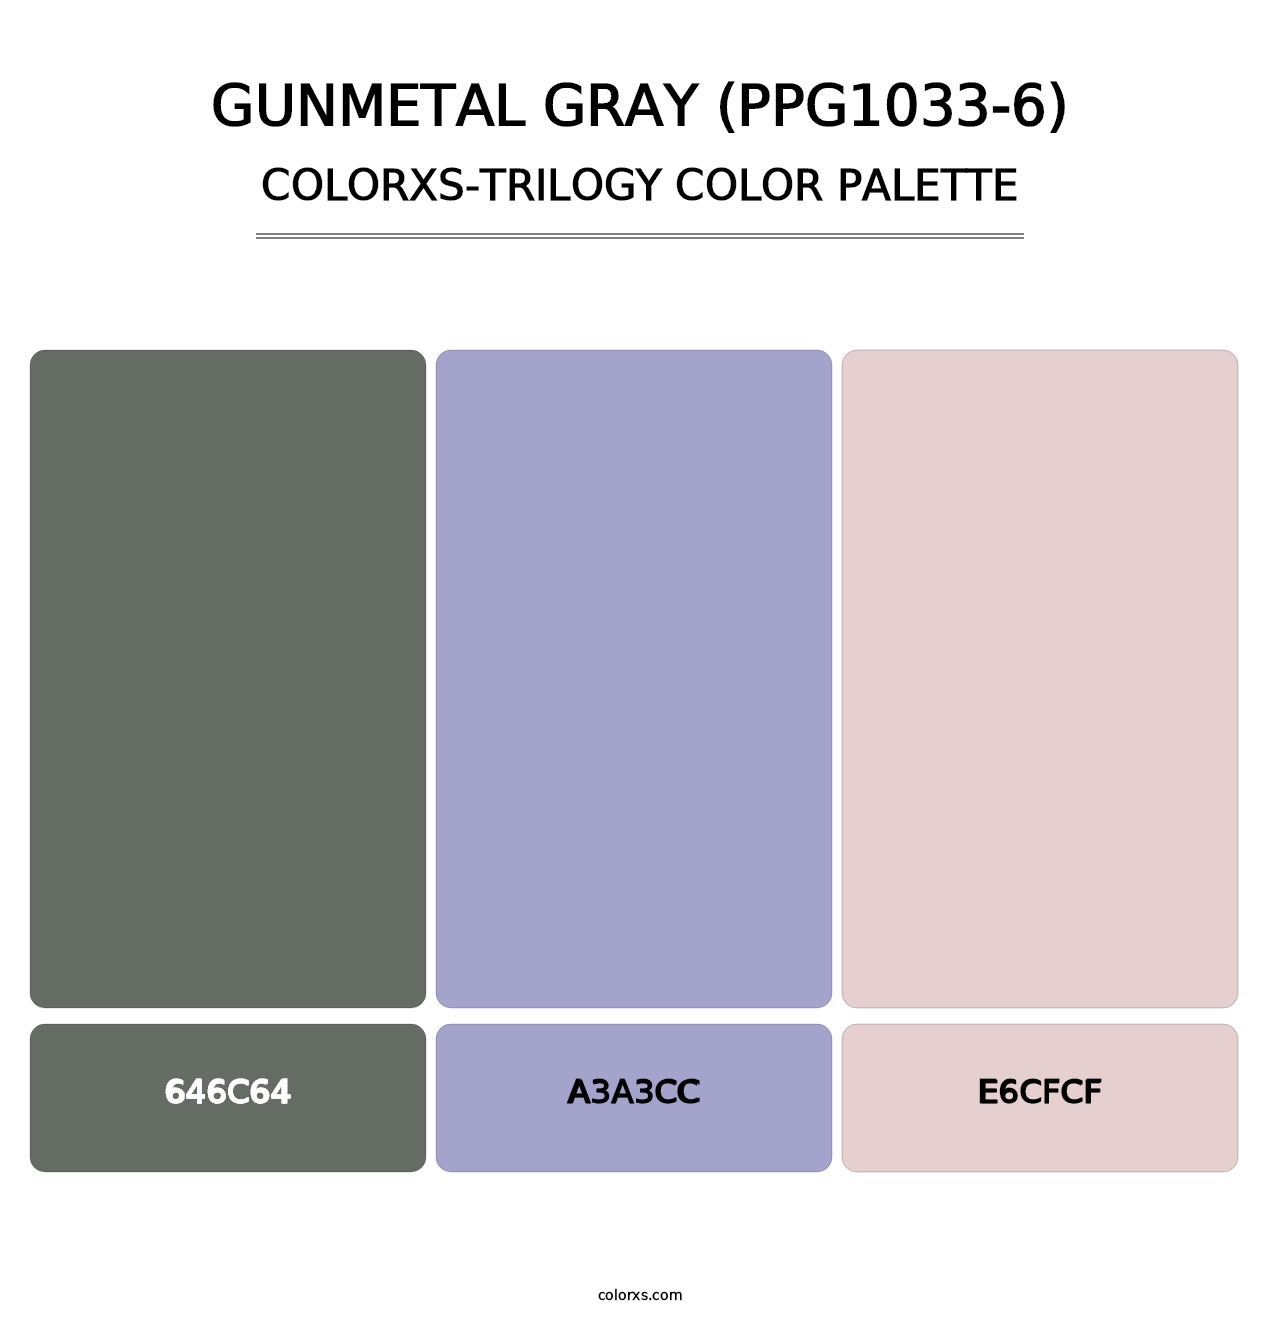 Gunmetal Gray (PPG1033-6) - Colorxs Trilogy Palette